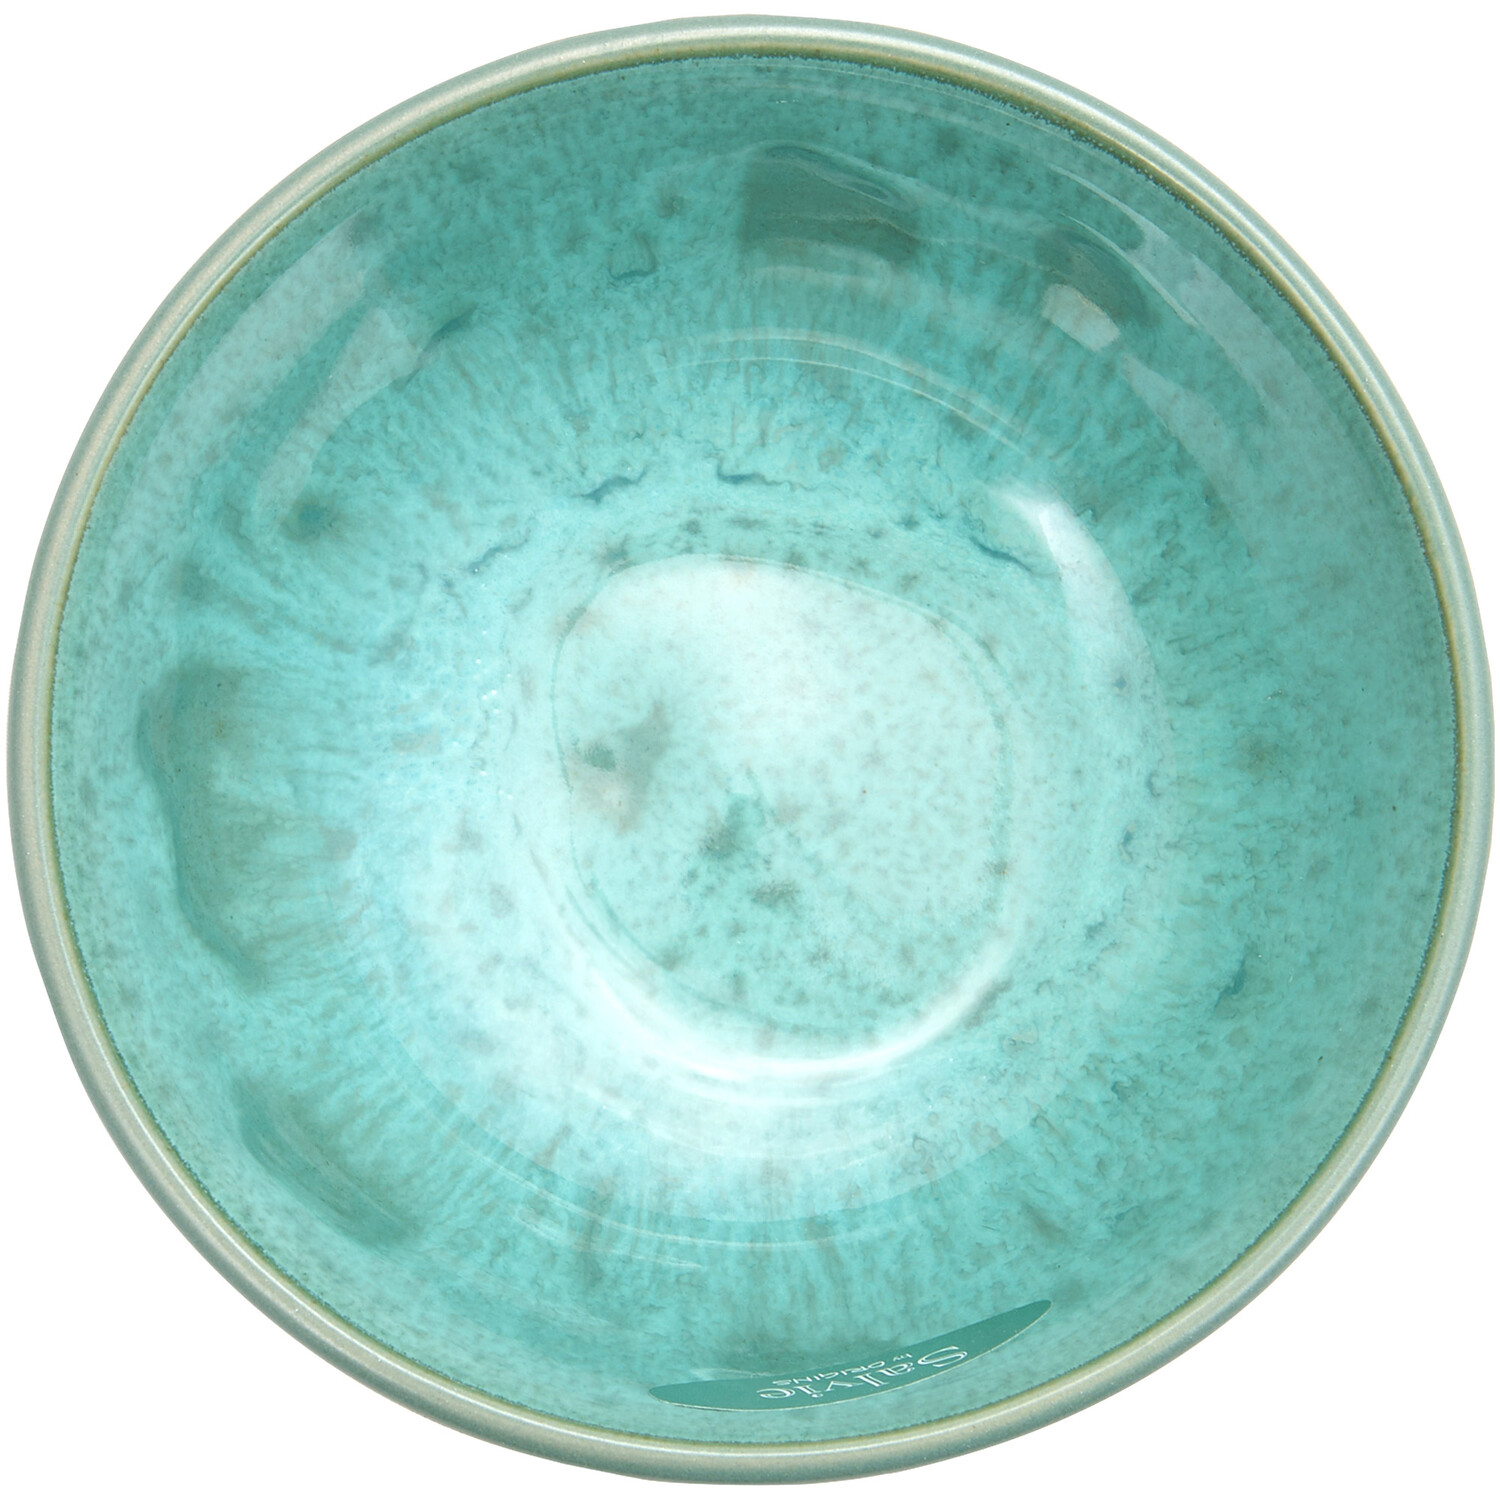 Salvie Reactive Glaze Nibbles Bowl - Sea Green Image 3